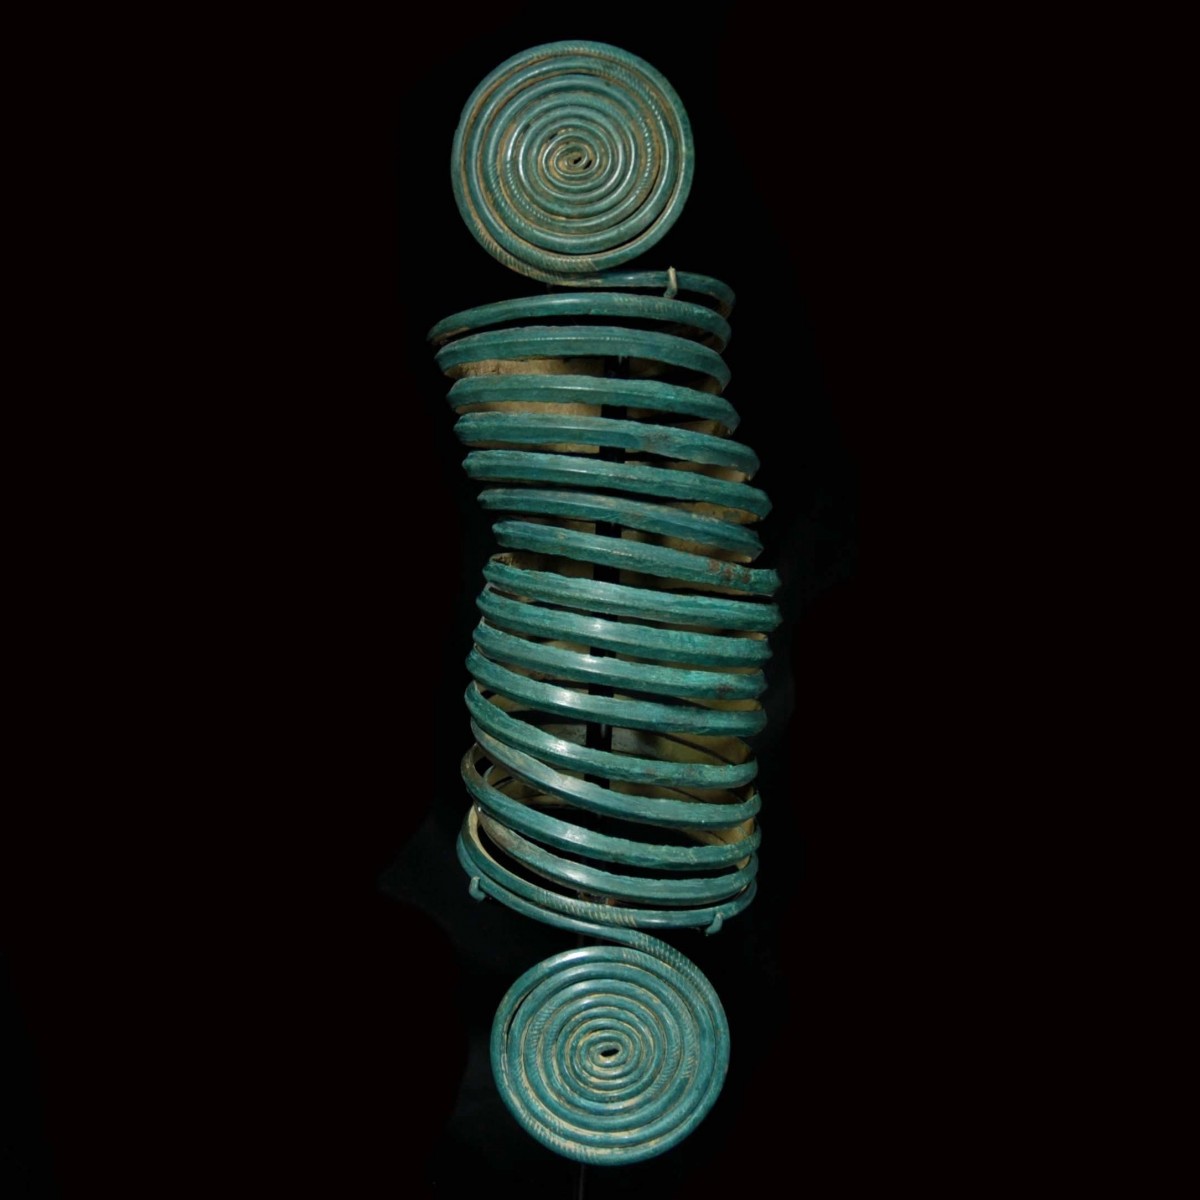 A Central European Copper alloy spiral Arm-Band